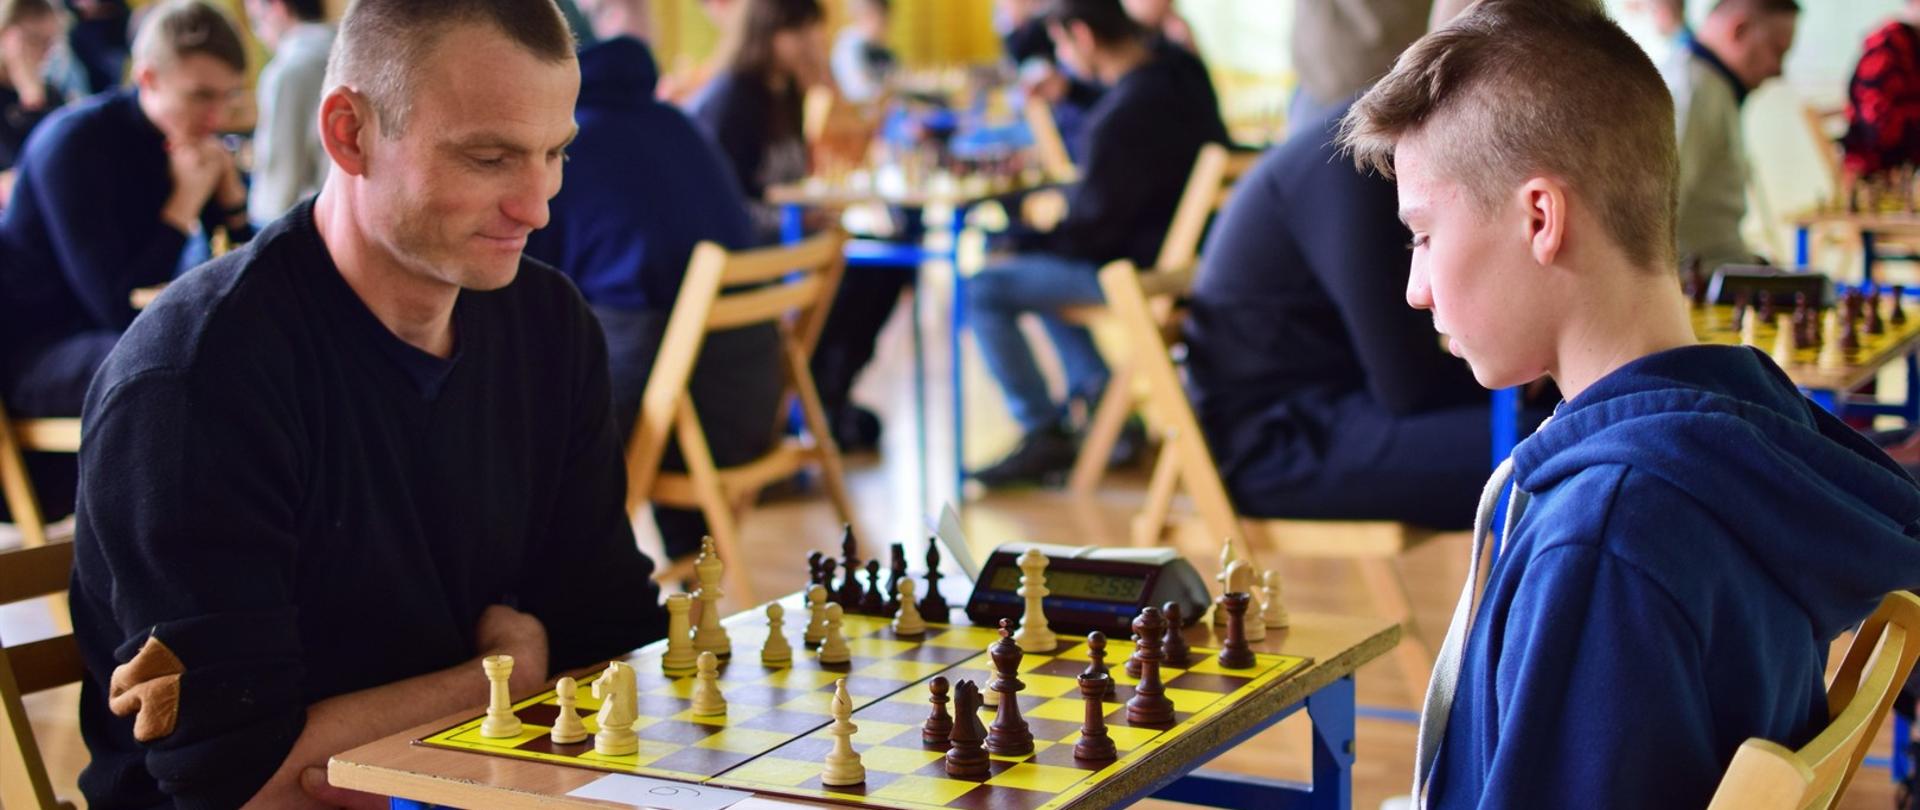 Uczestnicy turnieju szachowego podczas rozgrywek w szachy